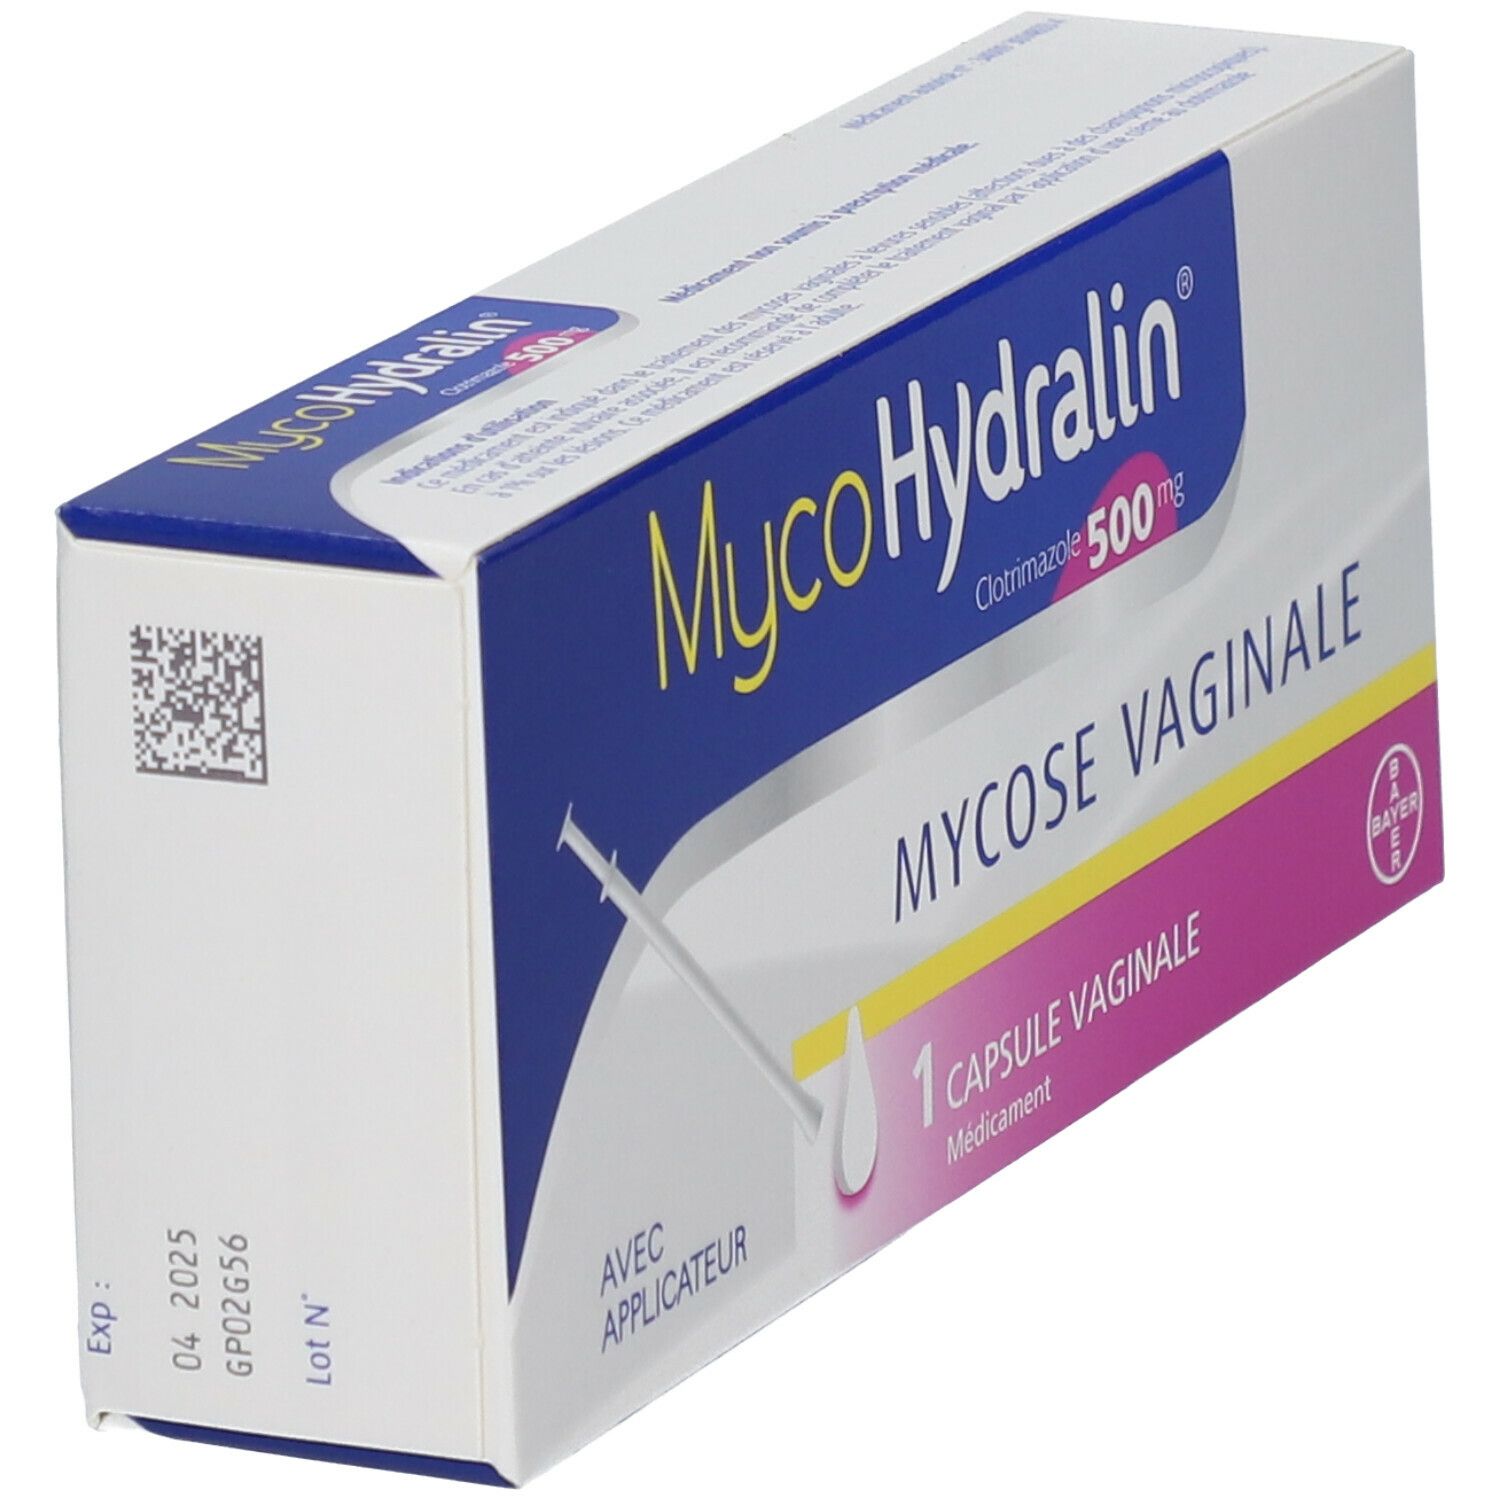 MycoHydralin 500mg capsule vaginale avec applicateur